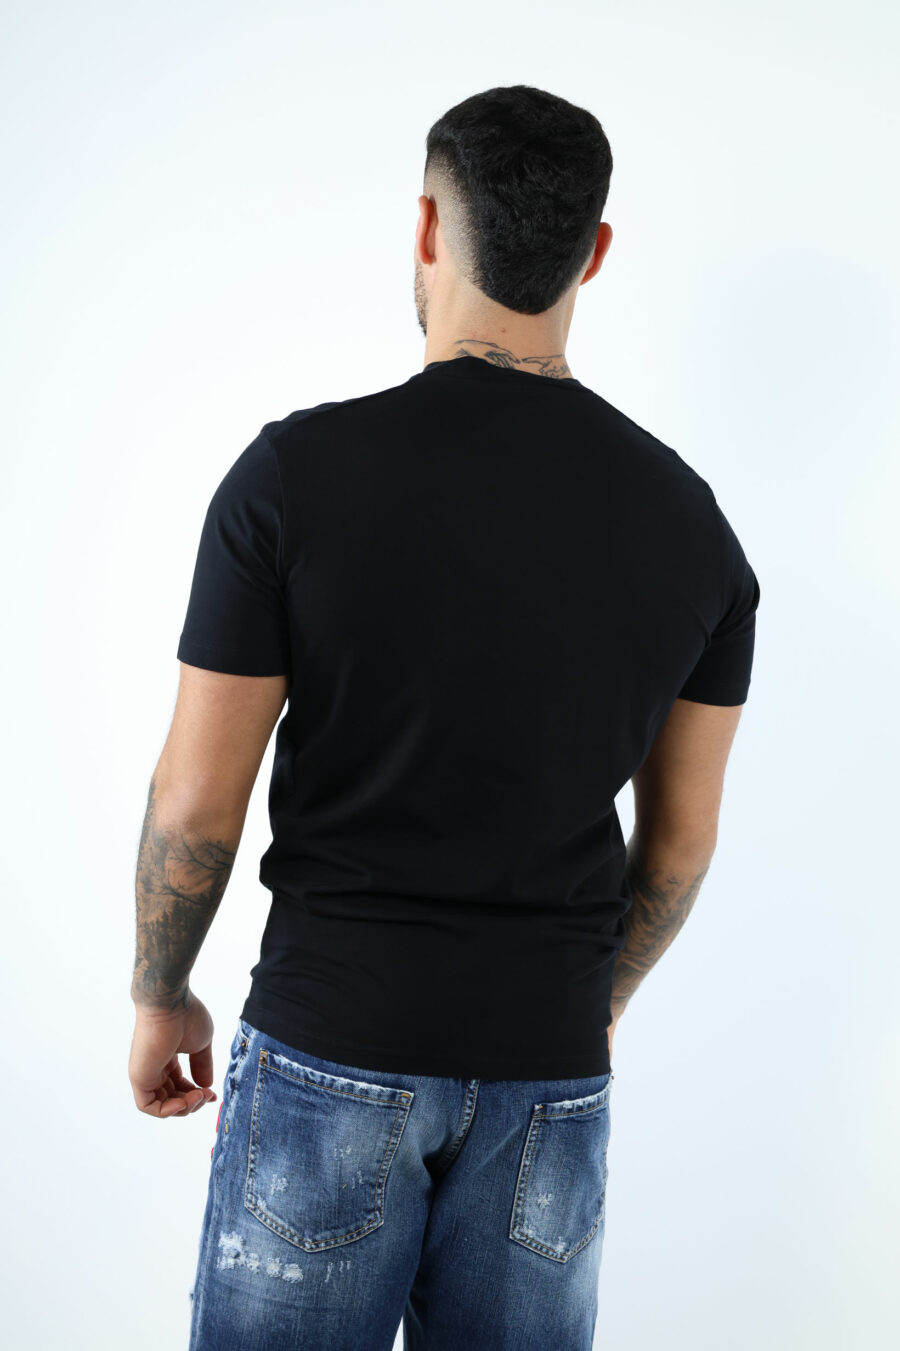 Black T-shirt with maxilogo "collegue league" - 106874